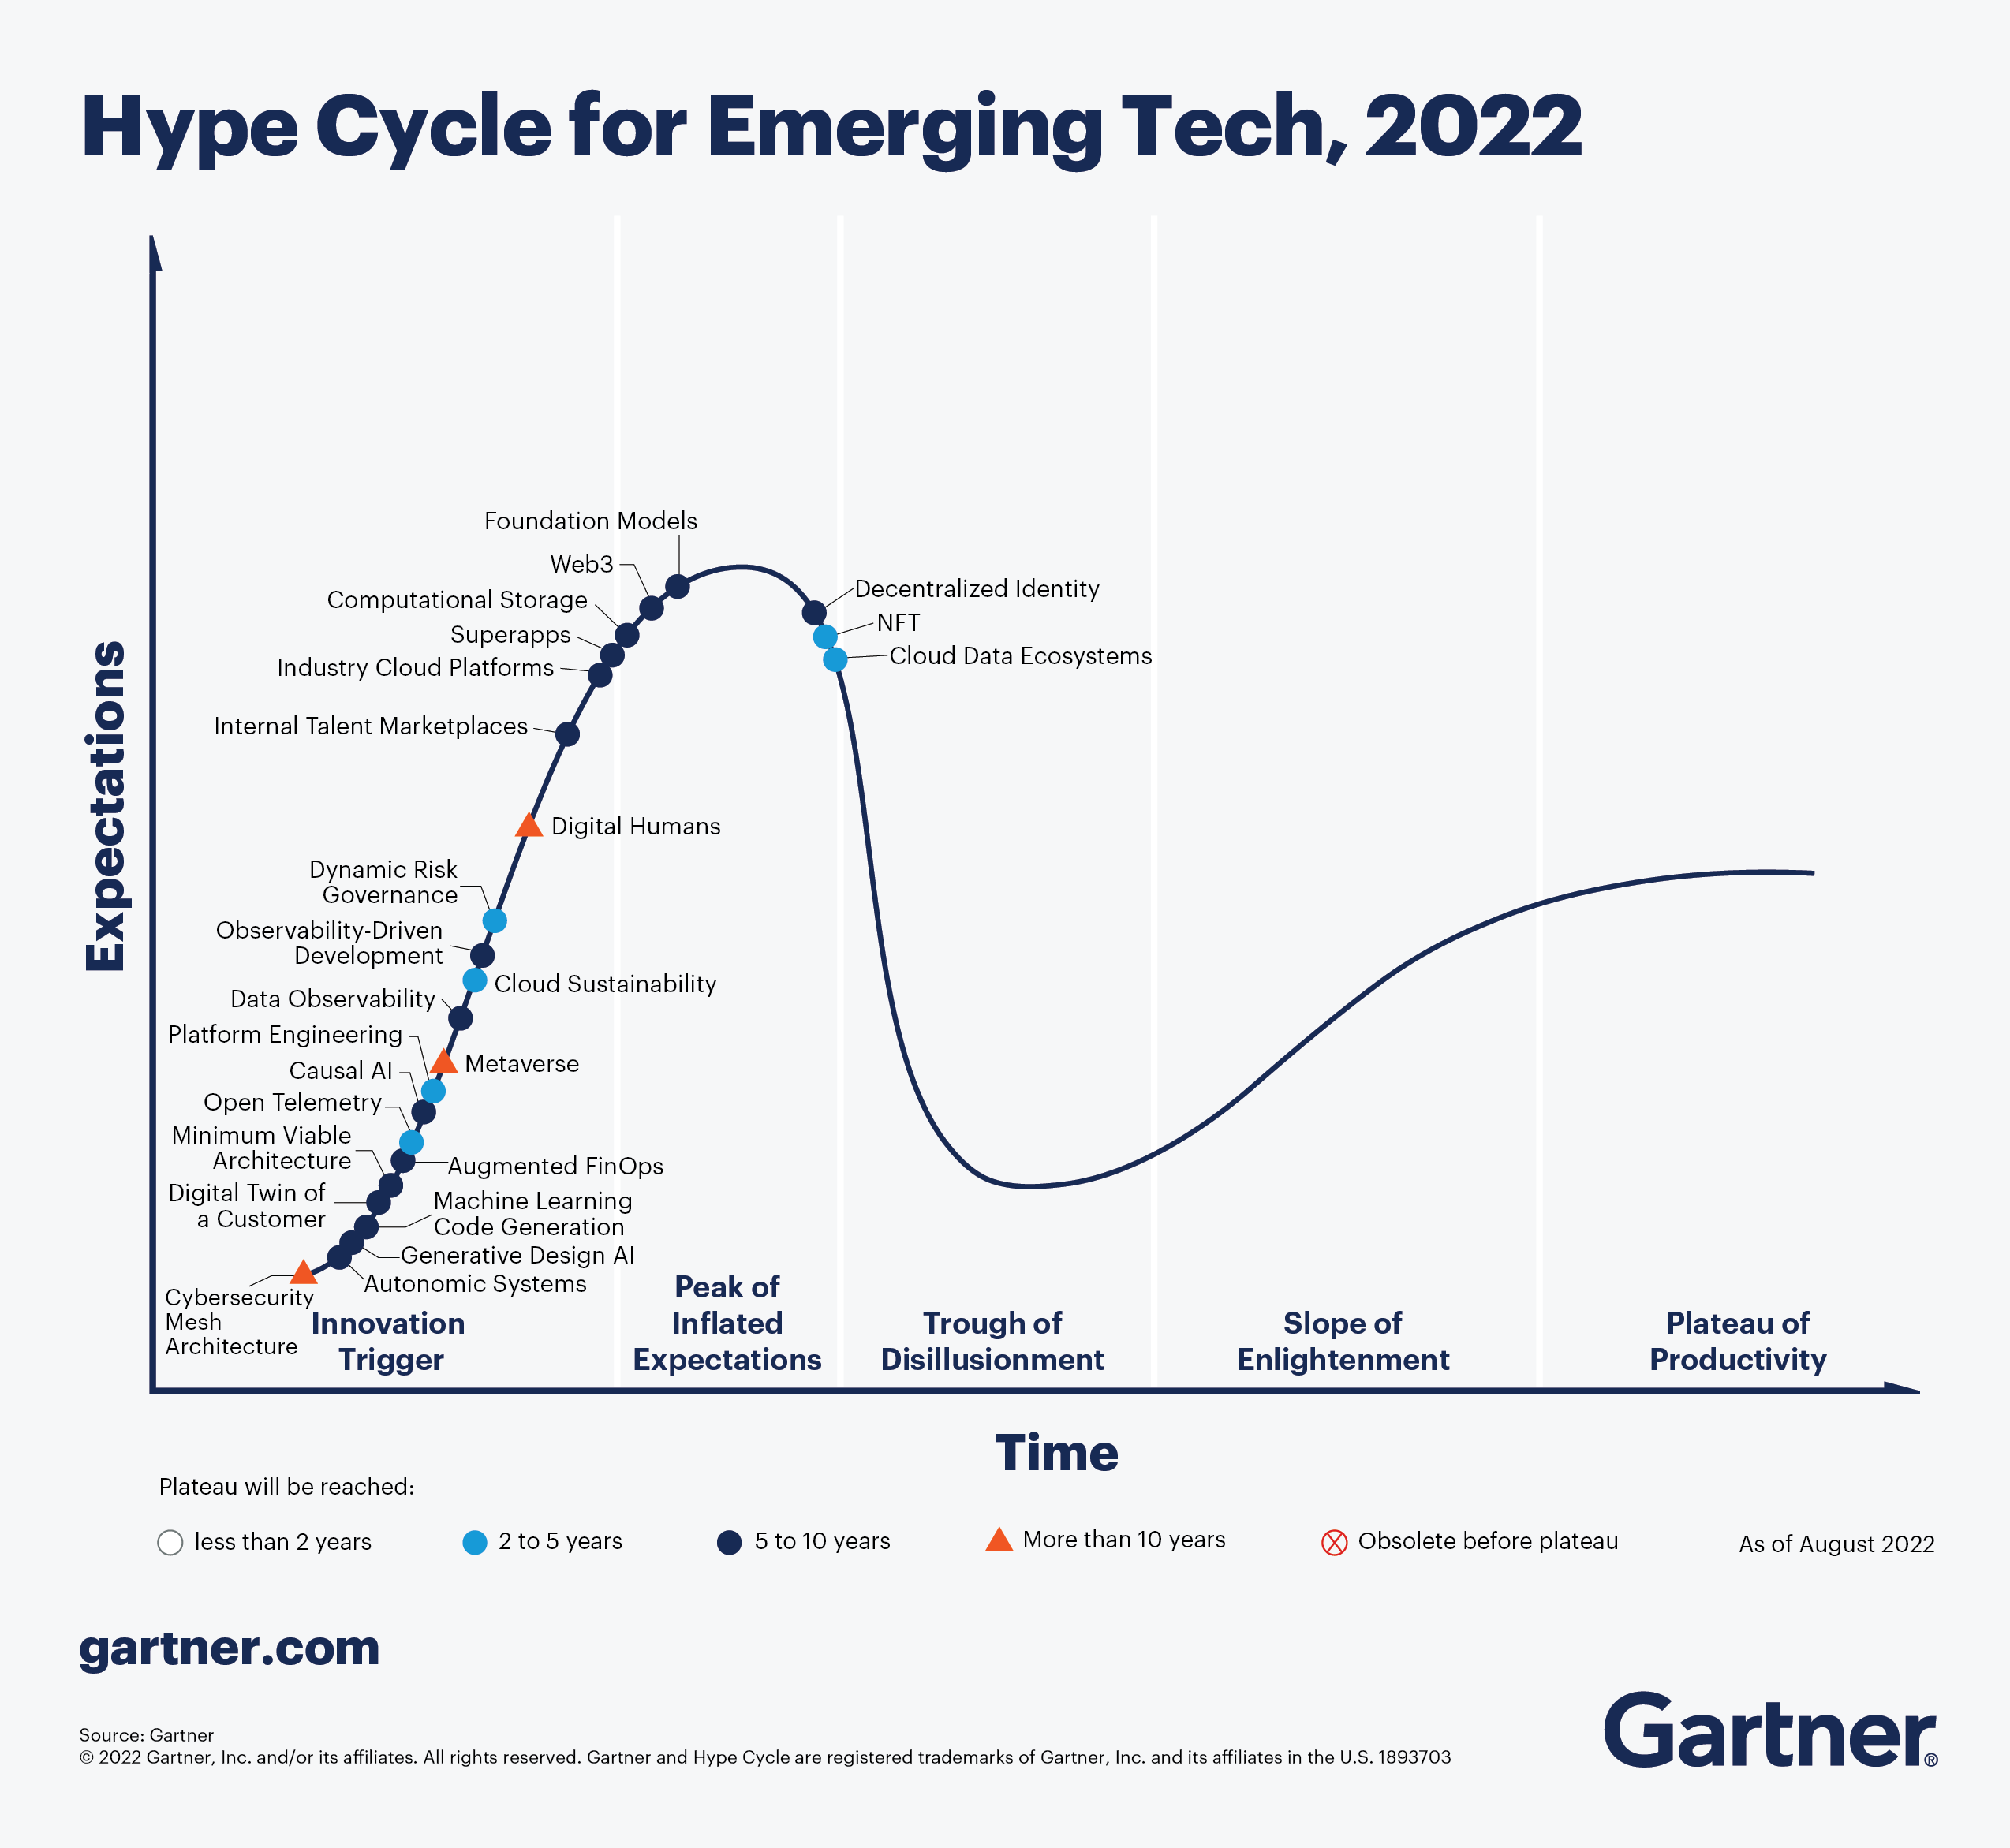 Gráfico del ciclo Hype para el año 2022 que sitúa las tecnologías emergentes a lo largo de la curva.